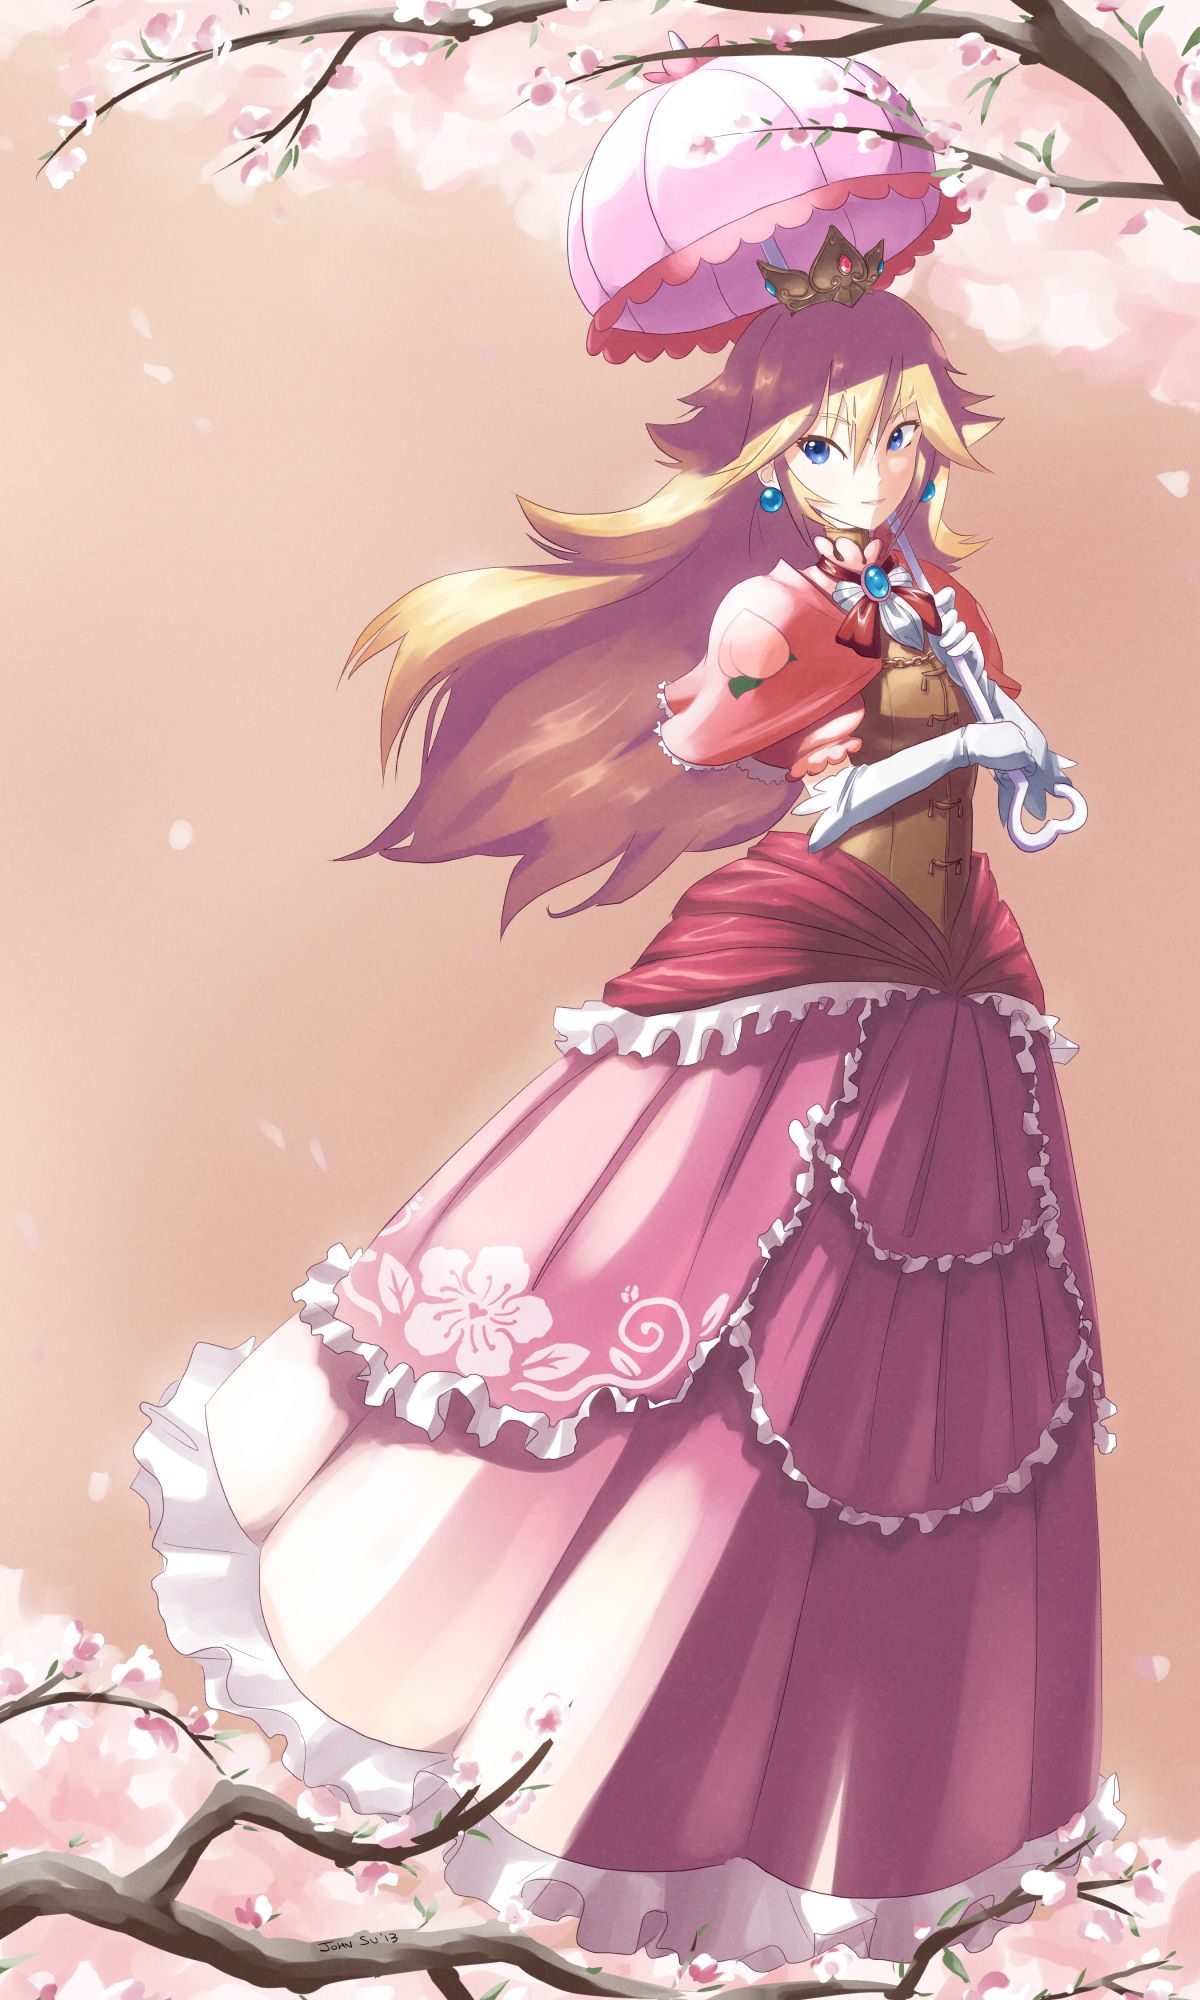 Princess Peach Mario Bros. Anime Image Board